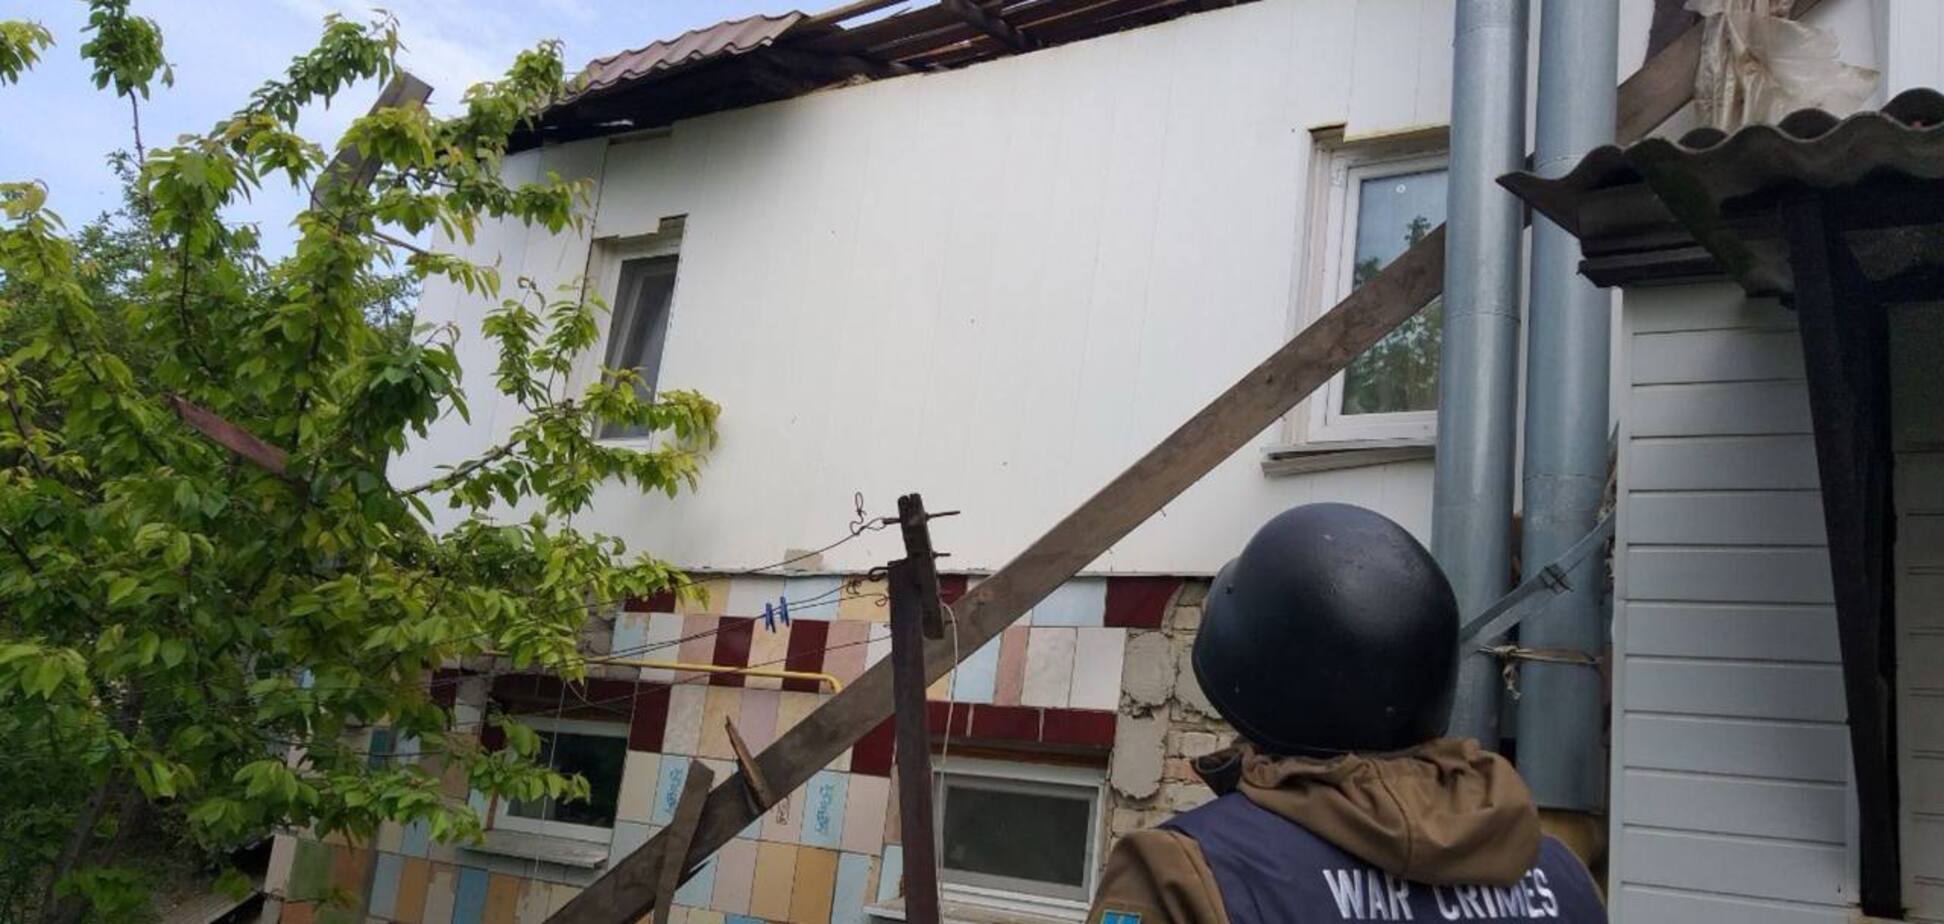 Оккупанты ударили по Купянску на Харьковщине, снаряд попал в дом: пострадал мужчина. Фото